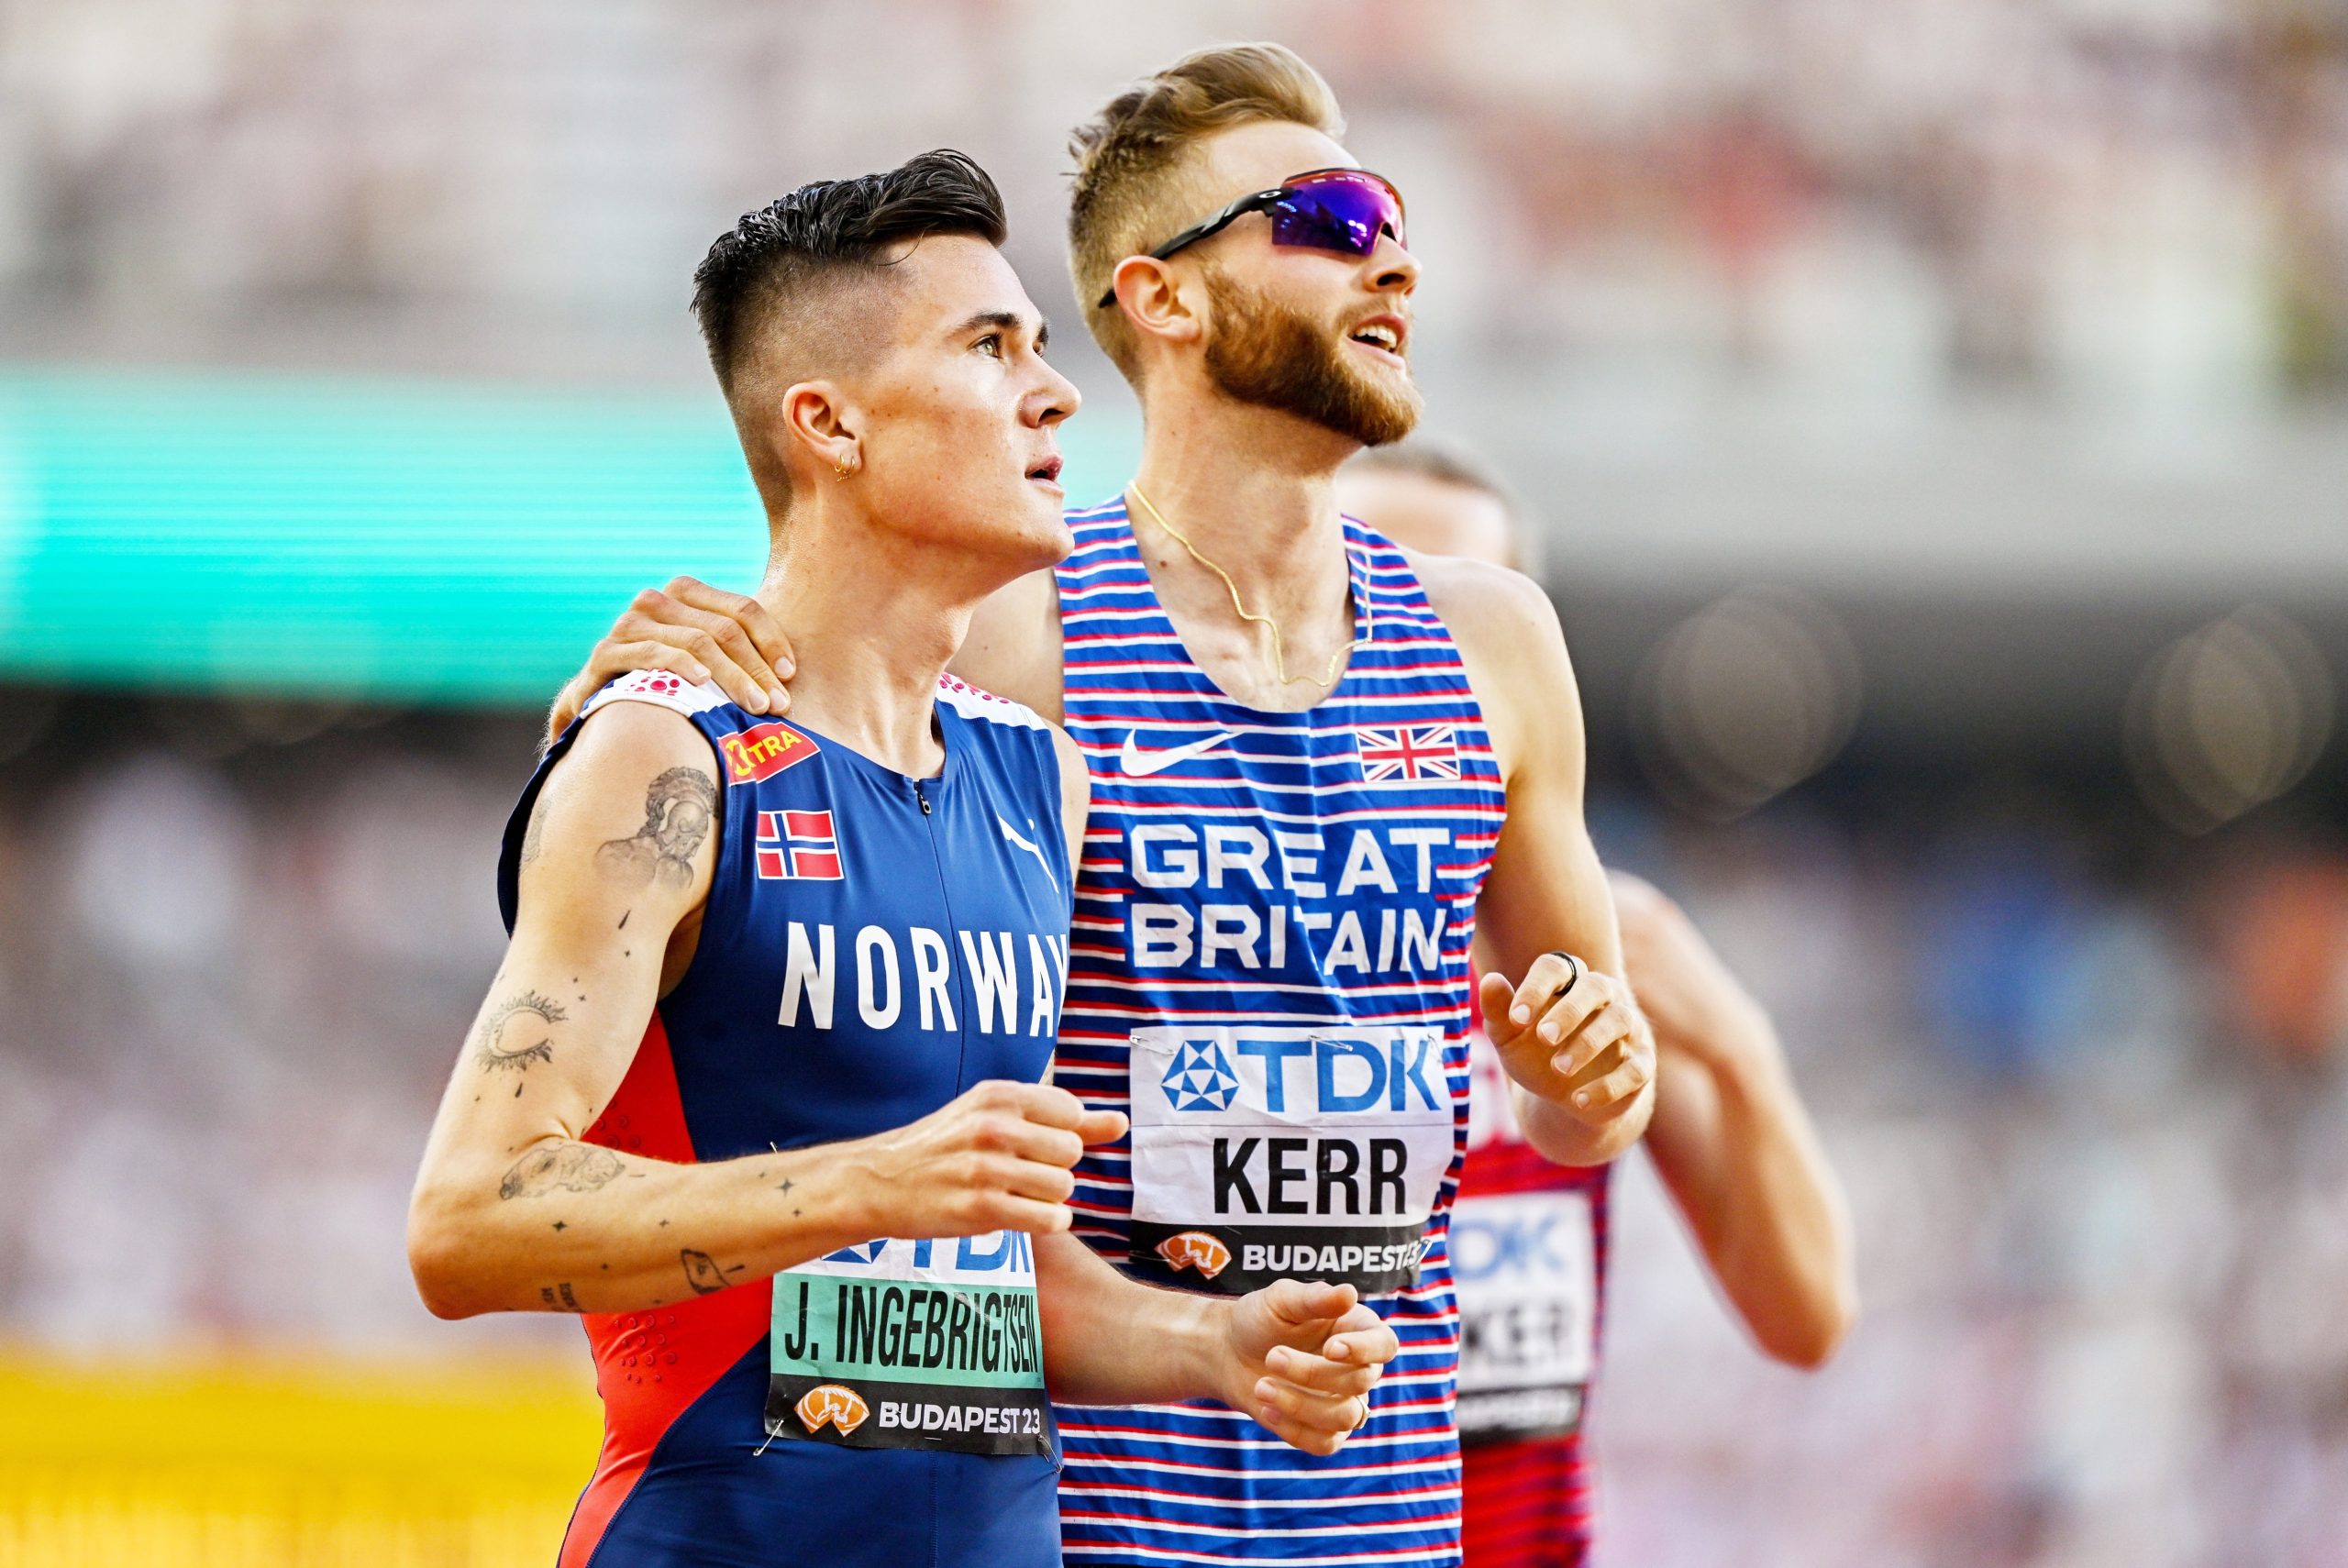 Aunque algunos atletas se niegan a competir contra sus rivales en la preparación para unos Juegos Olímpicos, Kerr se enfrentará a Ingebrigtsen en Eugene este mes. 